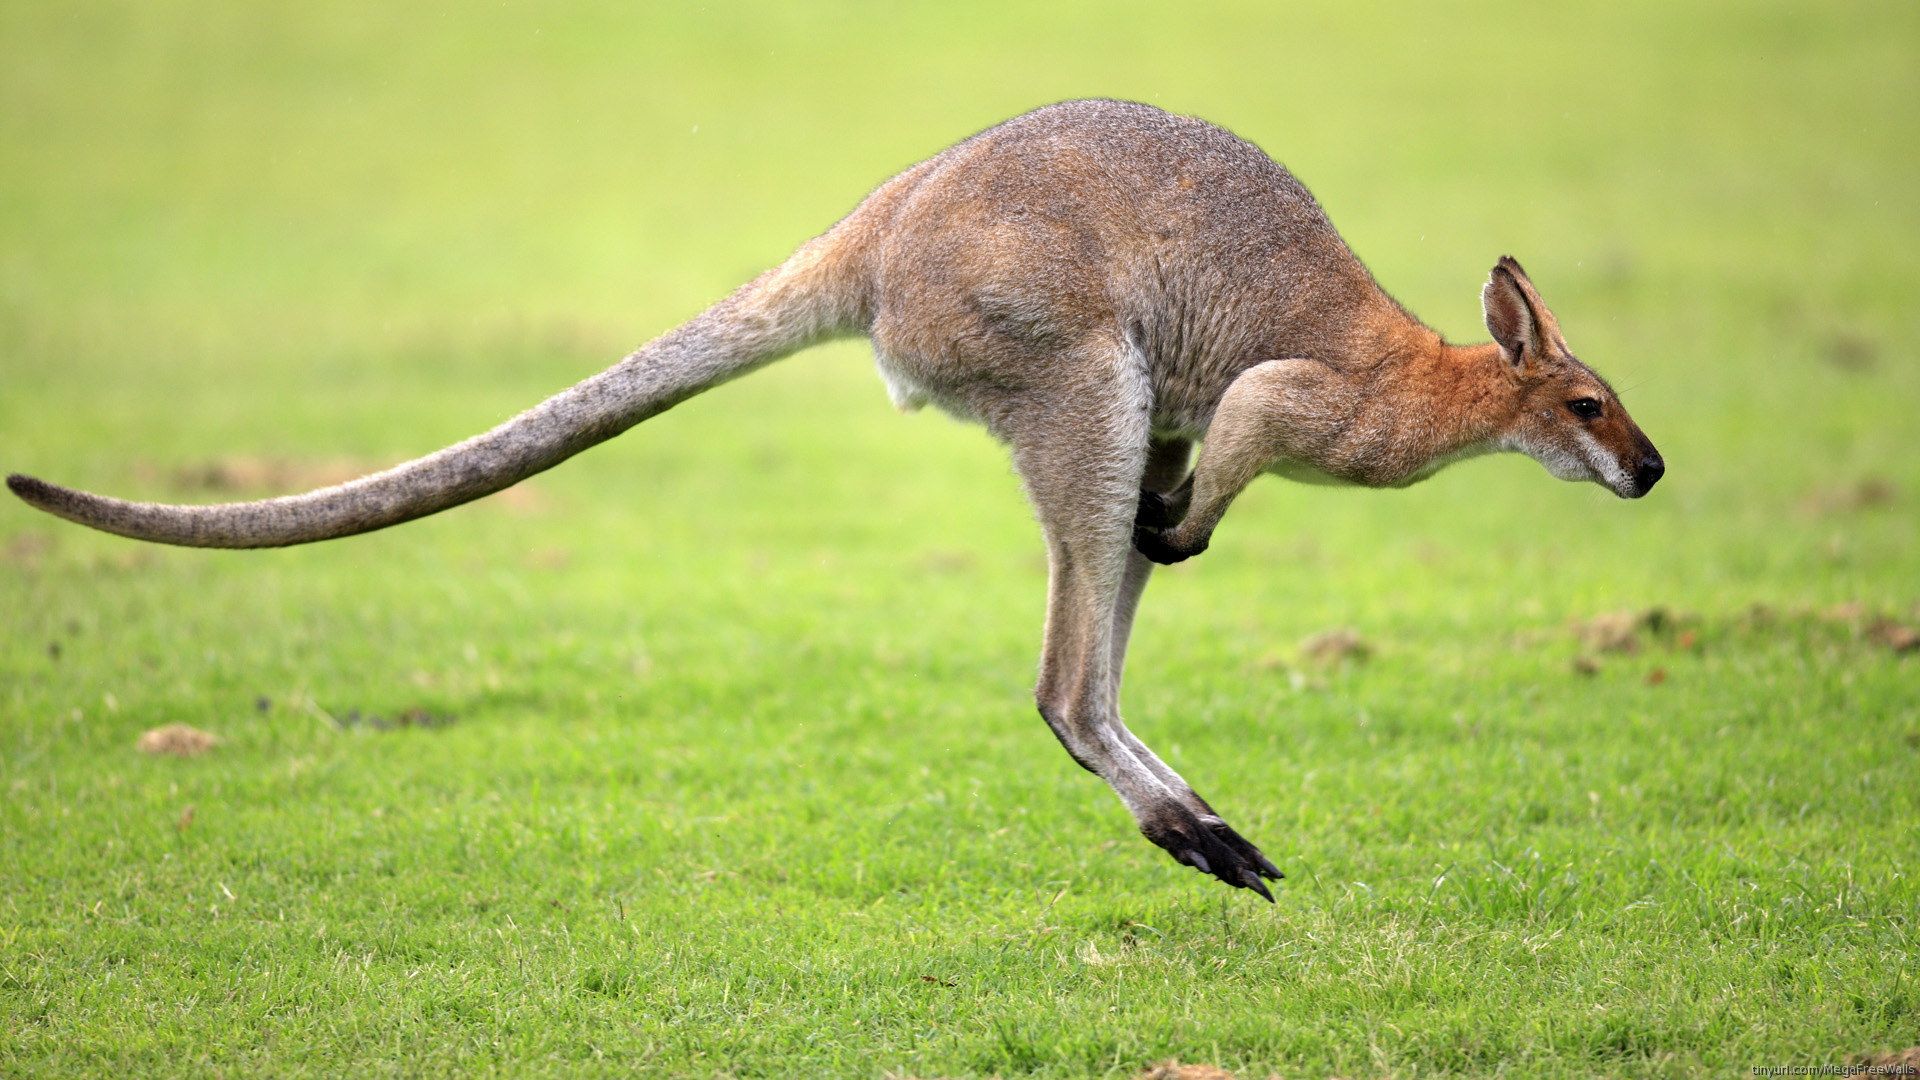 Best Photos Kangaroo HD Widescreen Wallpaper Australia